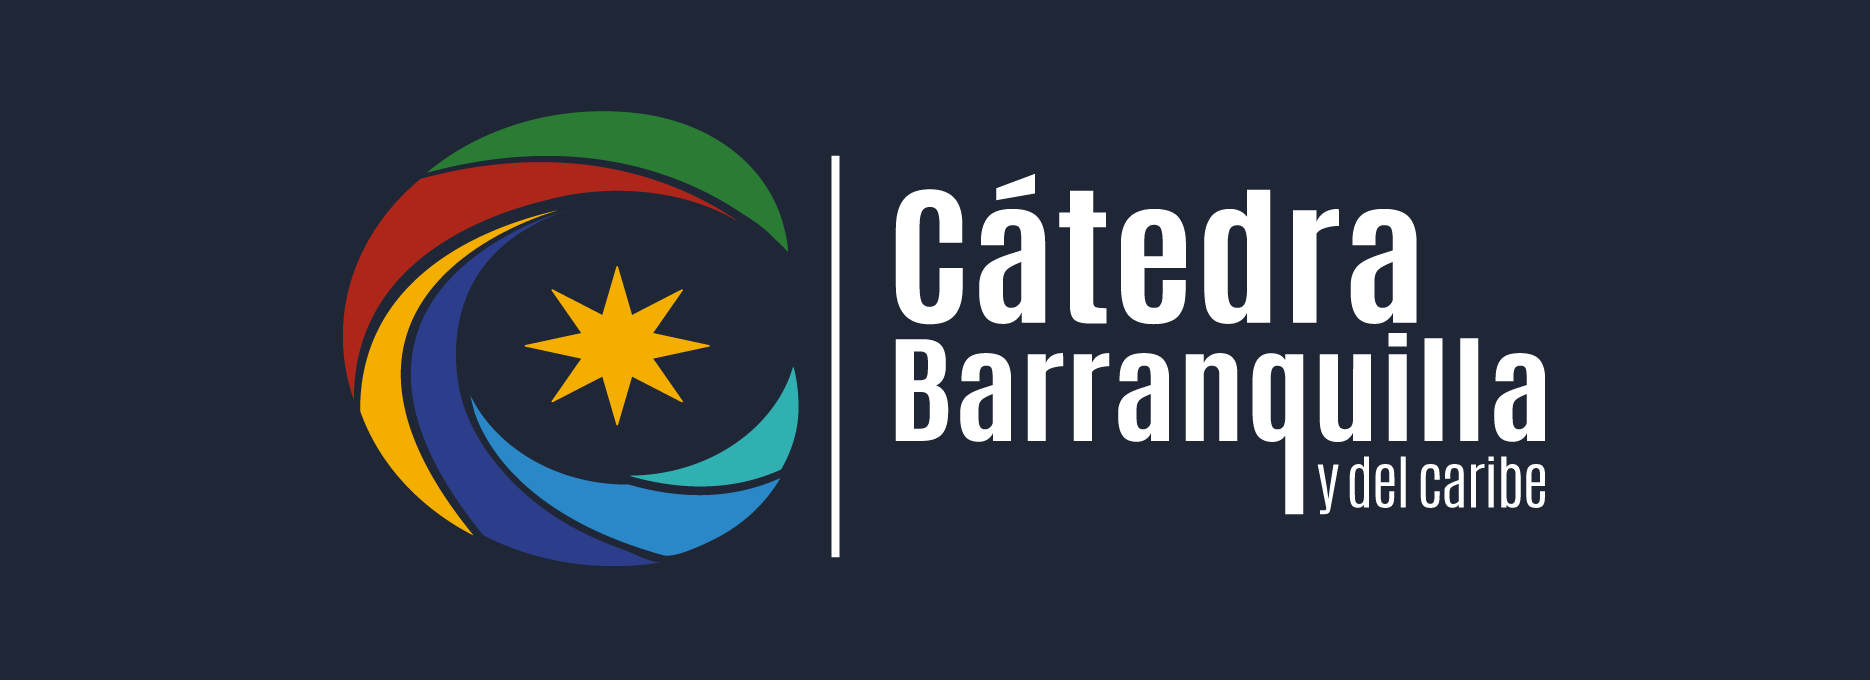 Diseño de la convocatoria a Cátedra Barranquilla